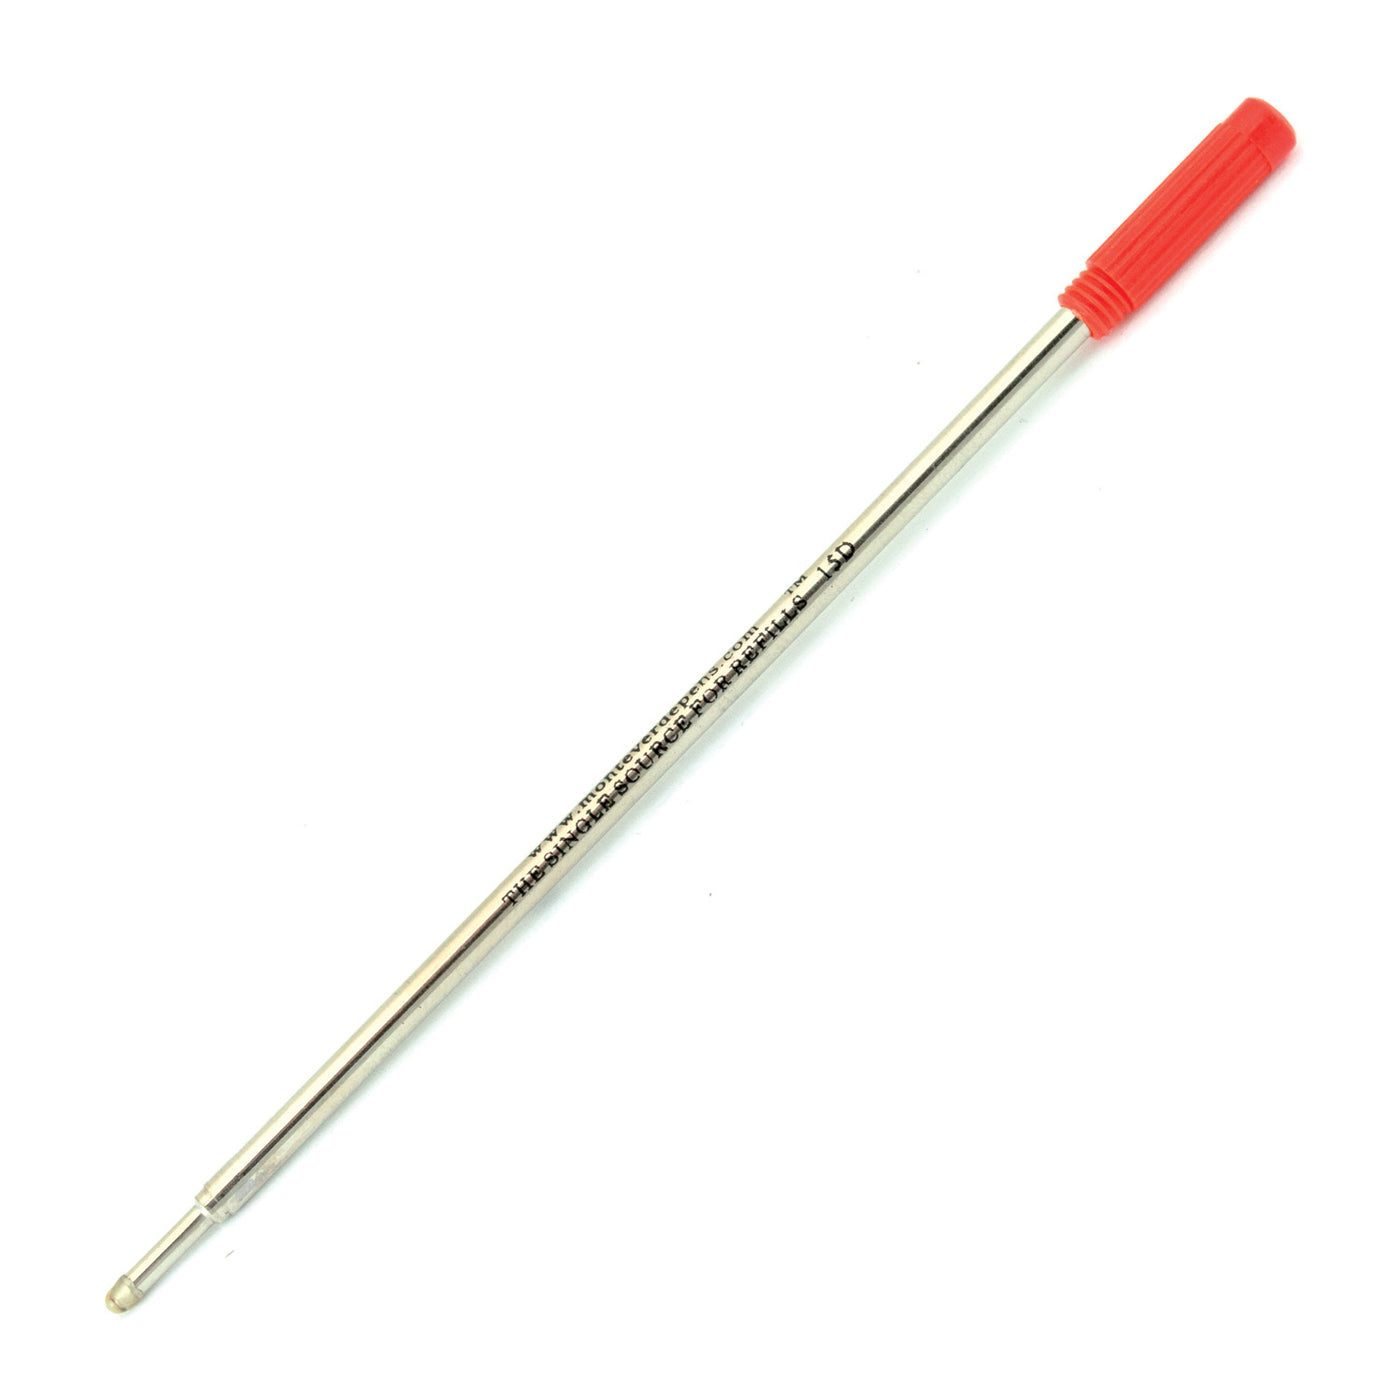 Monteverde Ball Pen Refill for Cross - Medium - Red - Pack of 2 1